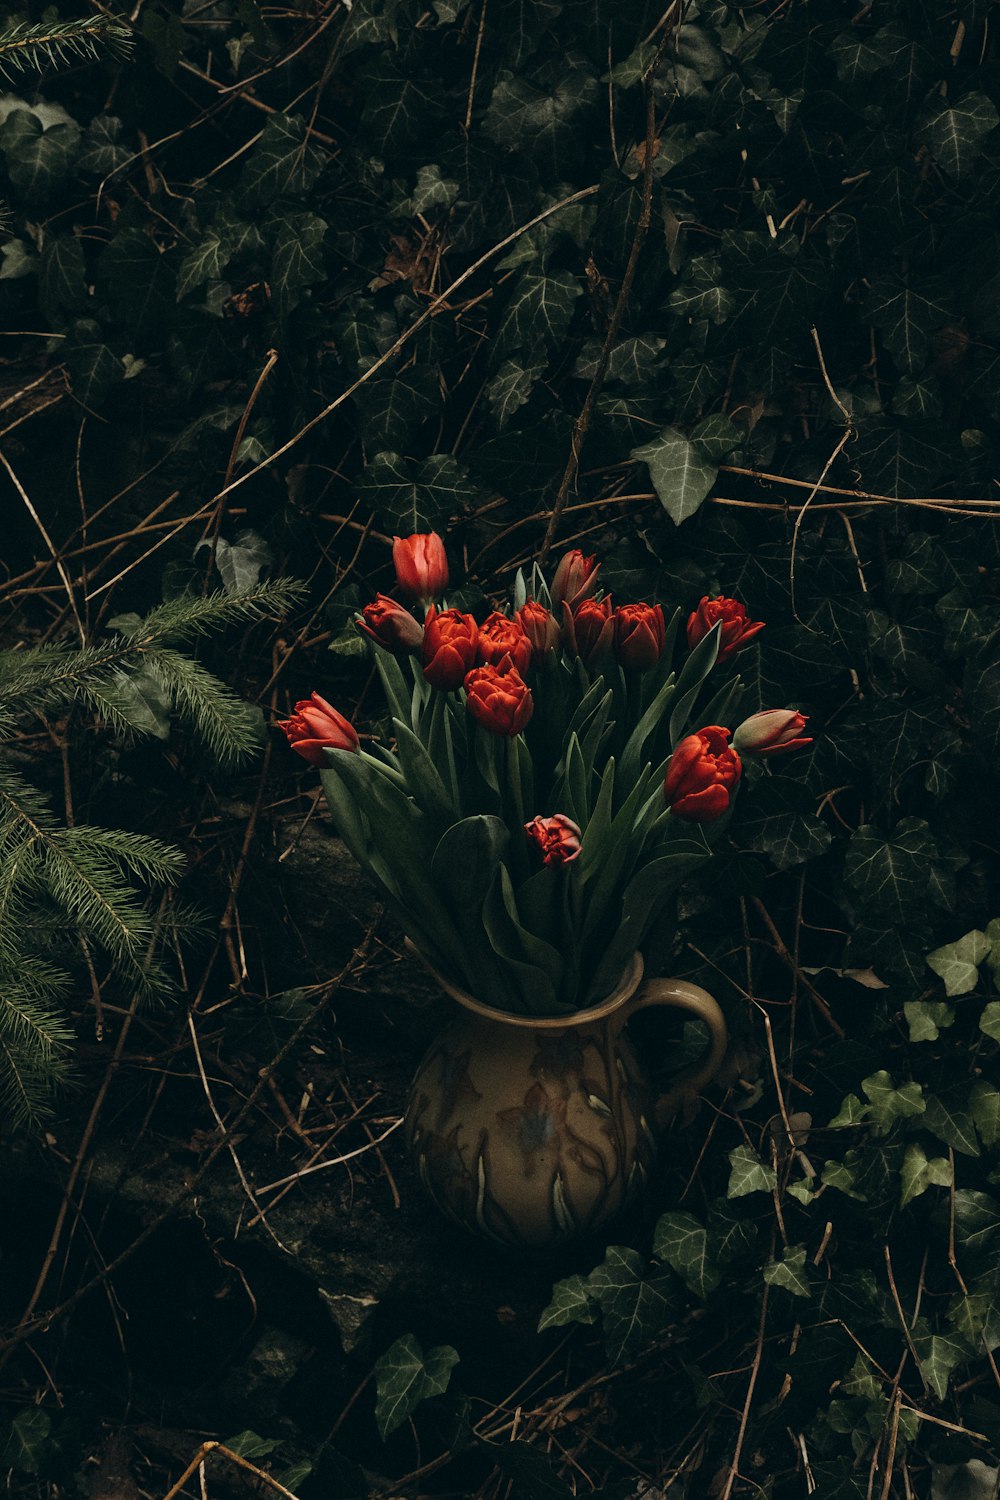 녹지로 둘러싸인 붉은 꽃으로 가득 찬 꽃병